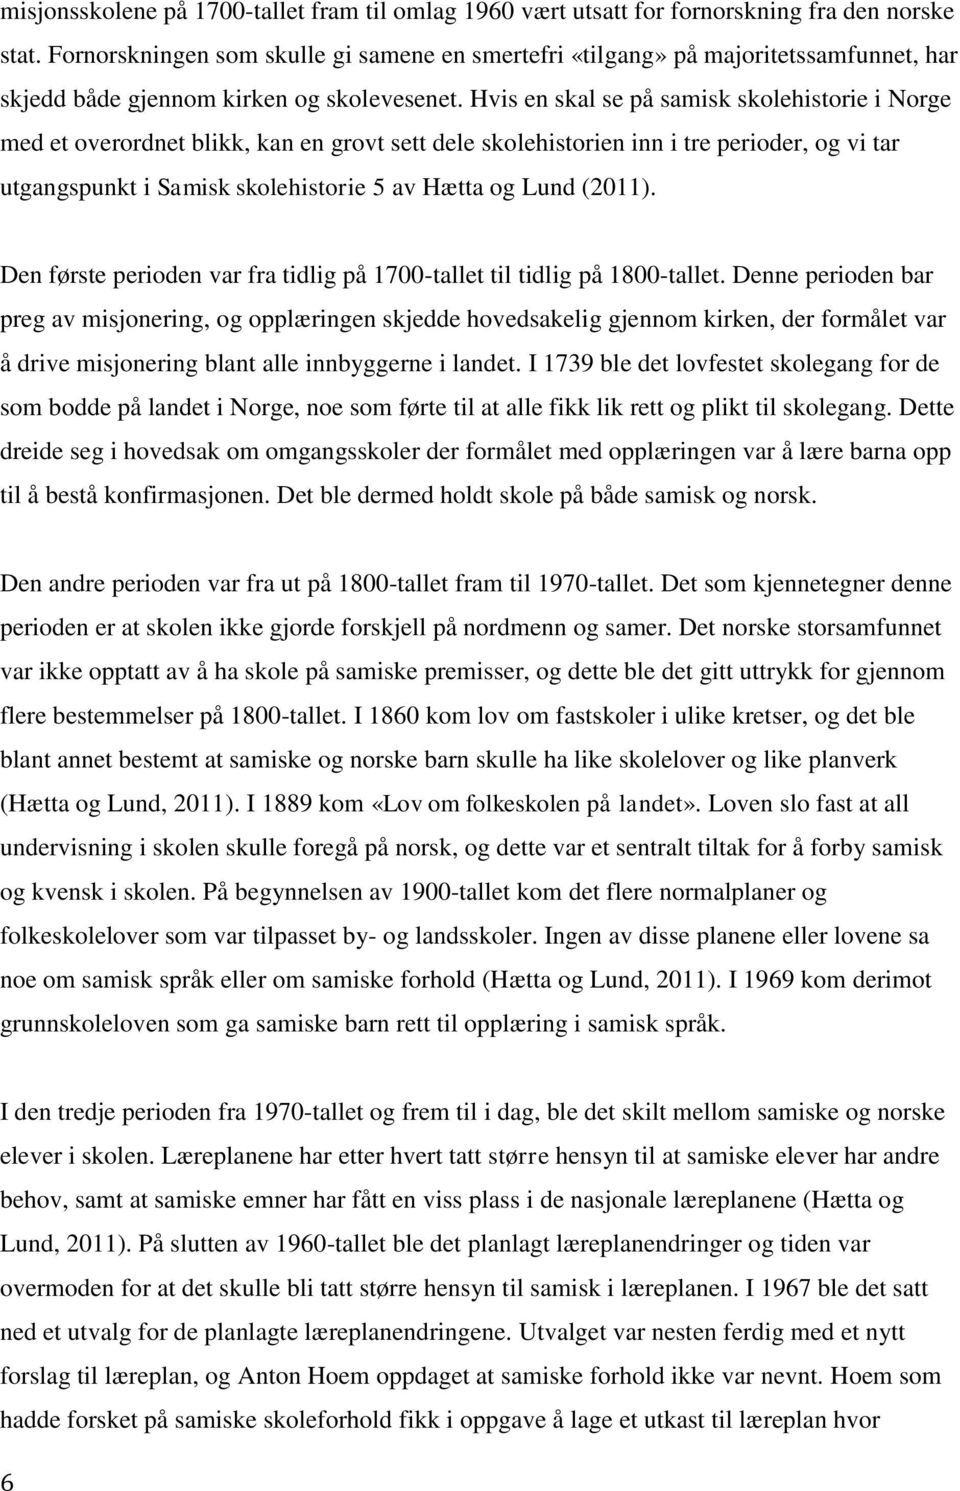 Hvis en skal se på samisk skolehistorie i Norge med et overordnet blikk, kan en grovt sett dele skolehistorien inn i tre perioder, og vi tar utgangspunkt i Samisk skolehistorie 5 av Hætta og Lund